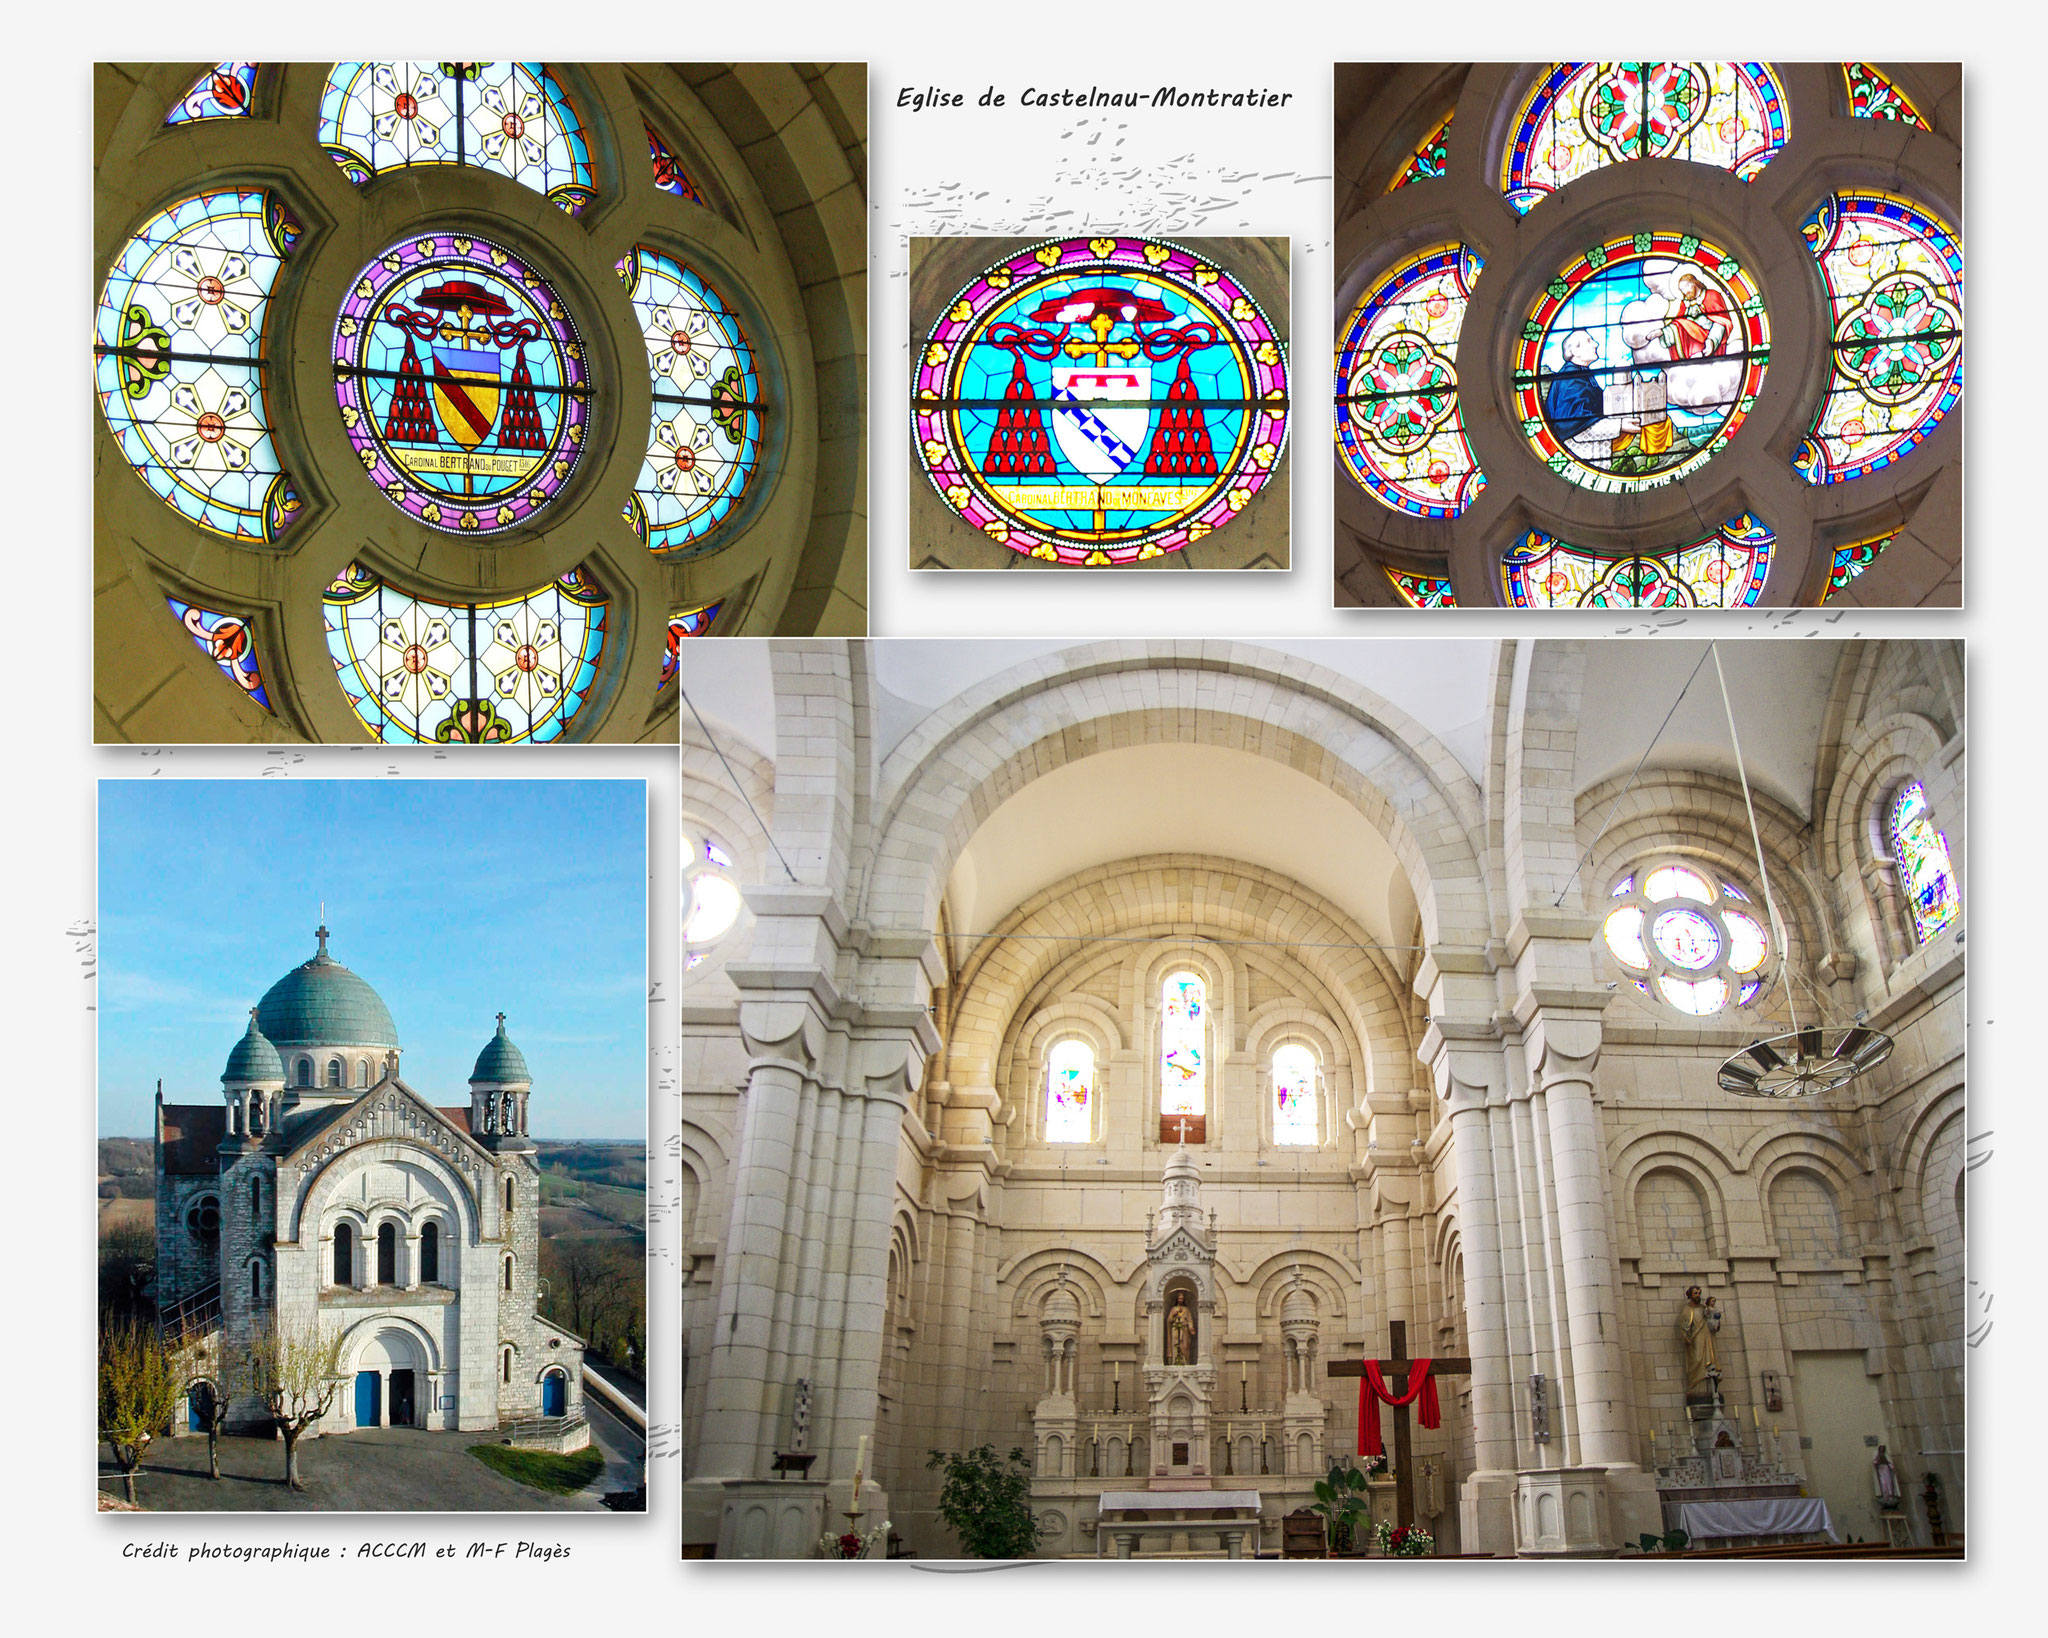 Eglise de Castelnau-Montratier